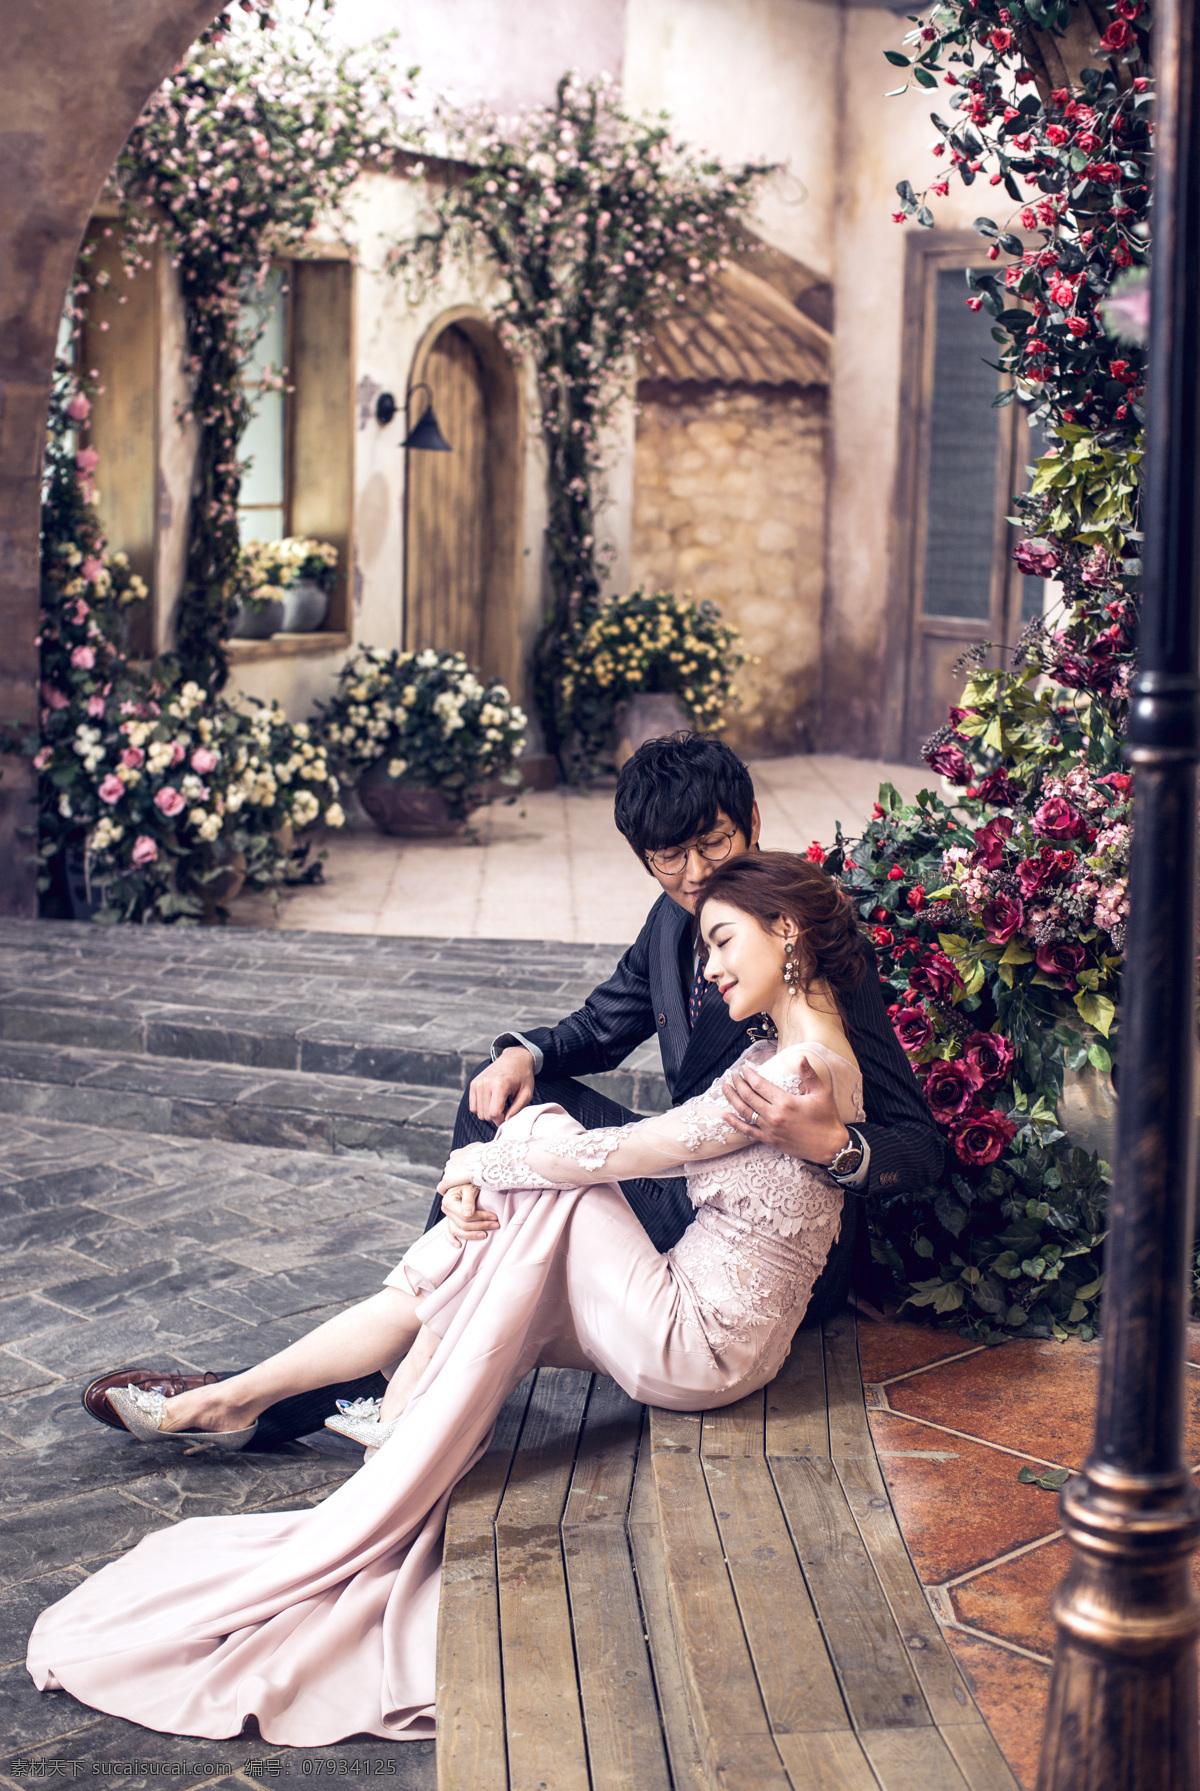 韩式婚纱摄影 枫叶 路灯 欧式 韩式 中式 双人 结婚照 婚纱摄影 婚照 人物图库 人物摄影